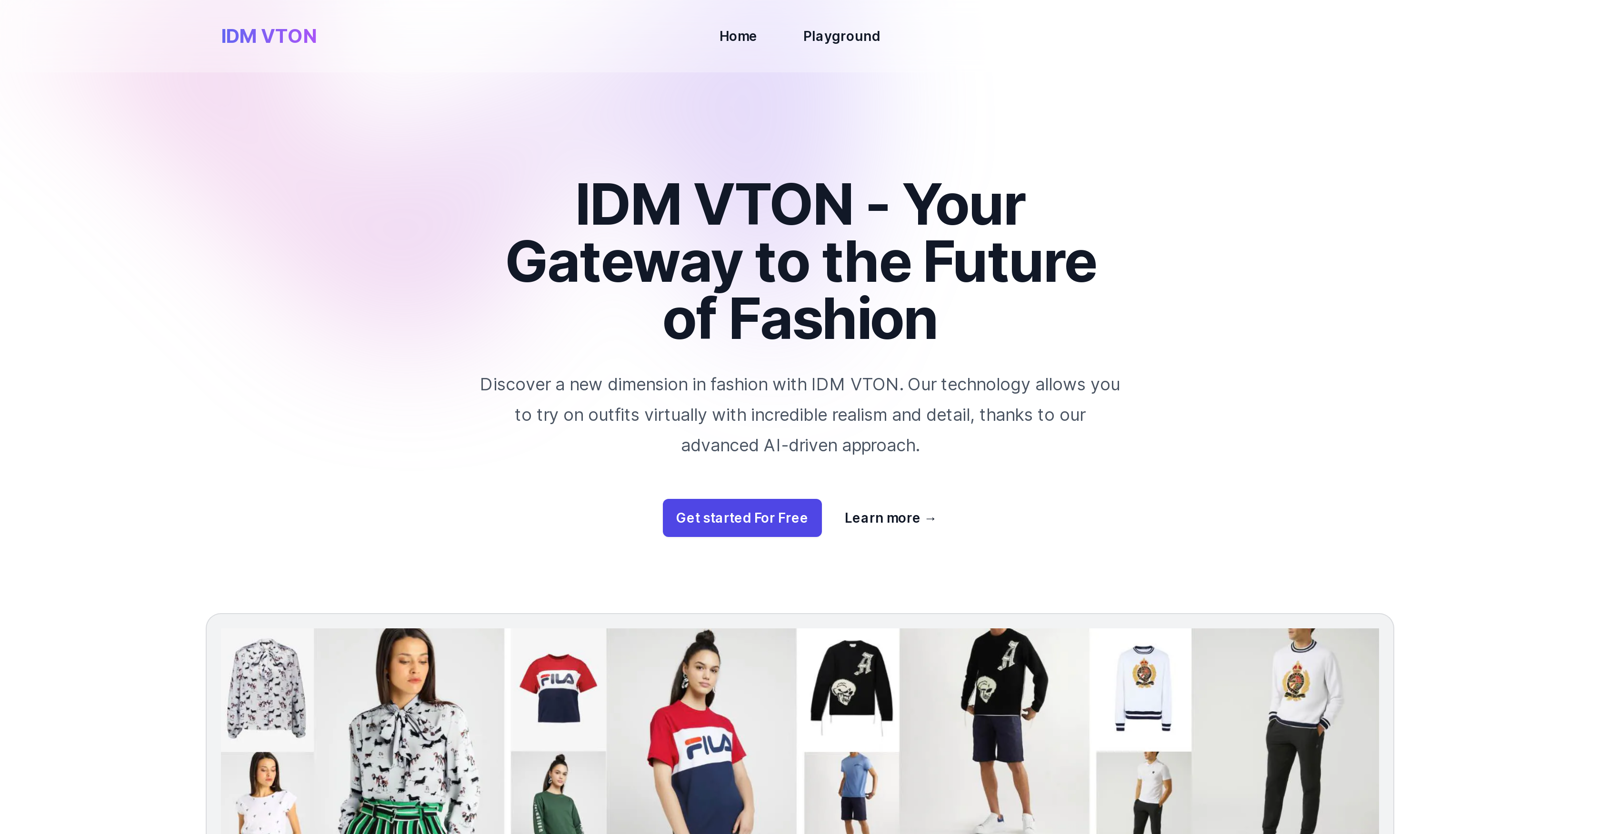 IDM VTON website